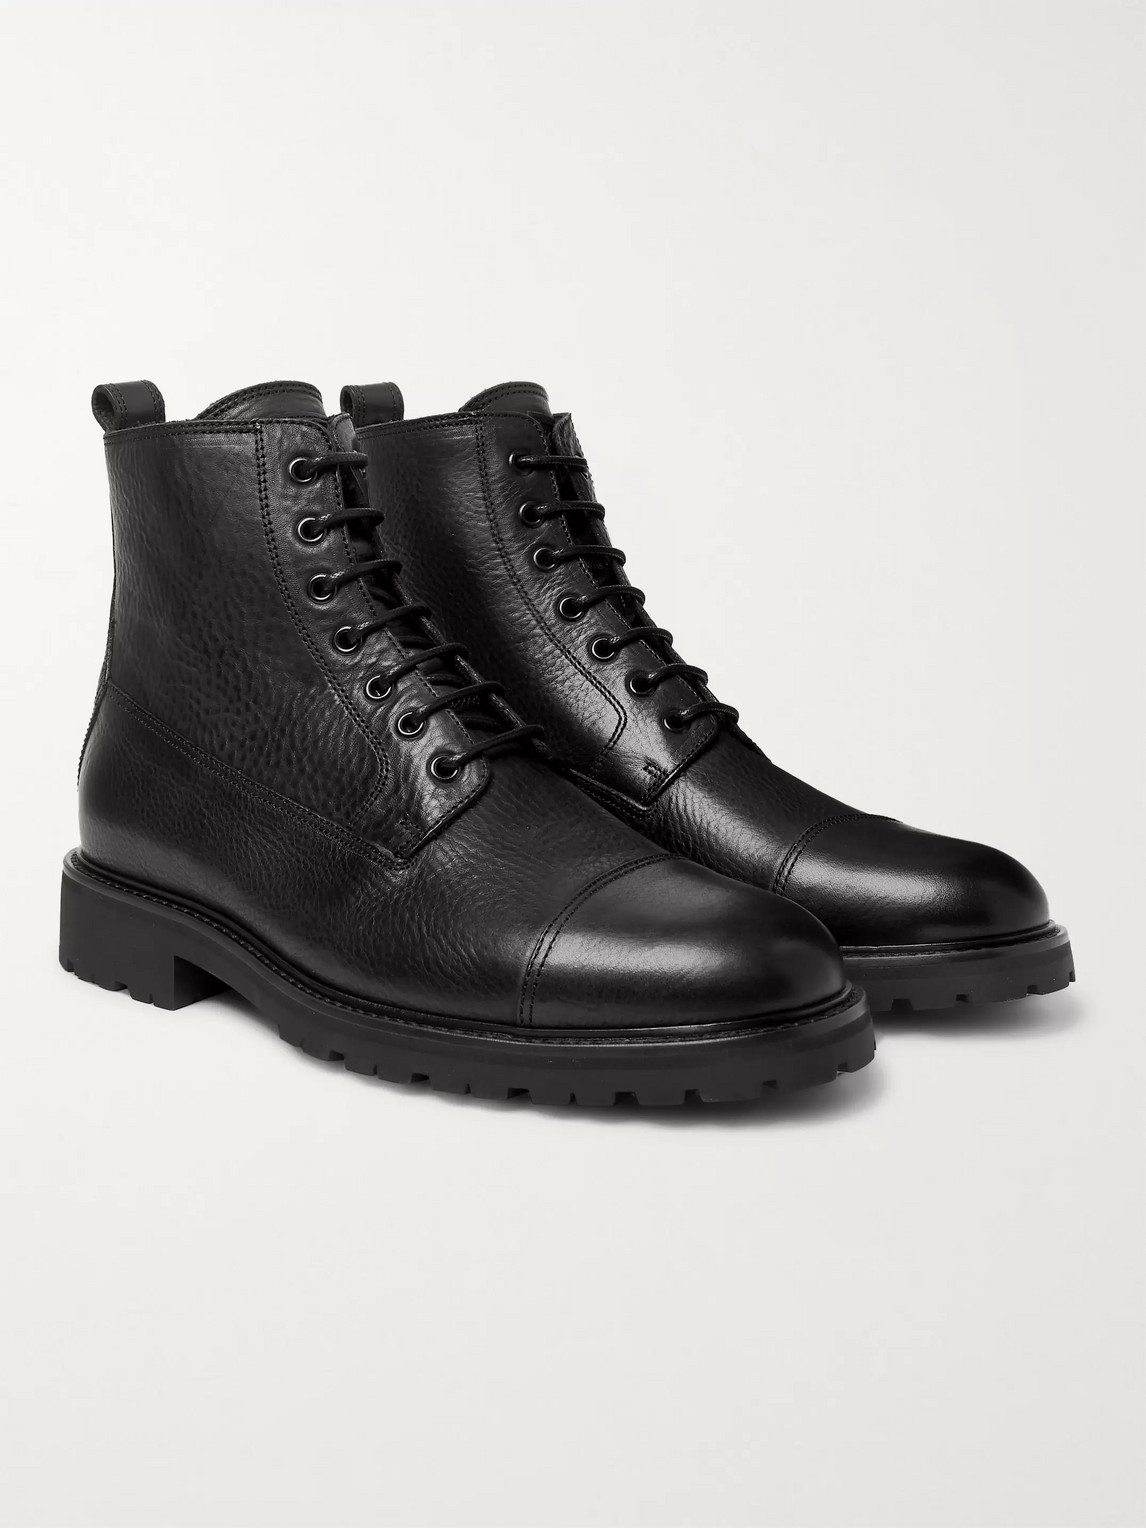 Belstaff Alperton 2.0 Leather Boots In Black